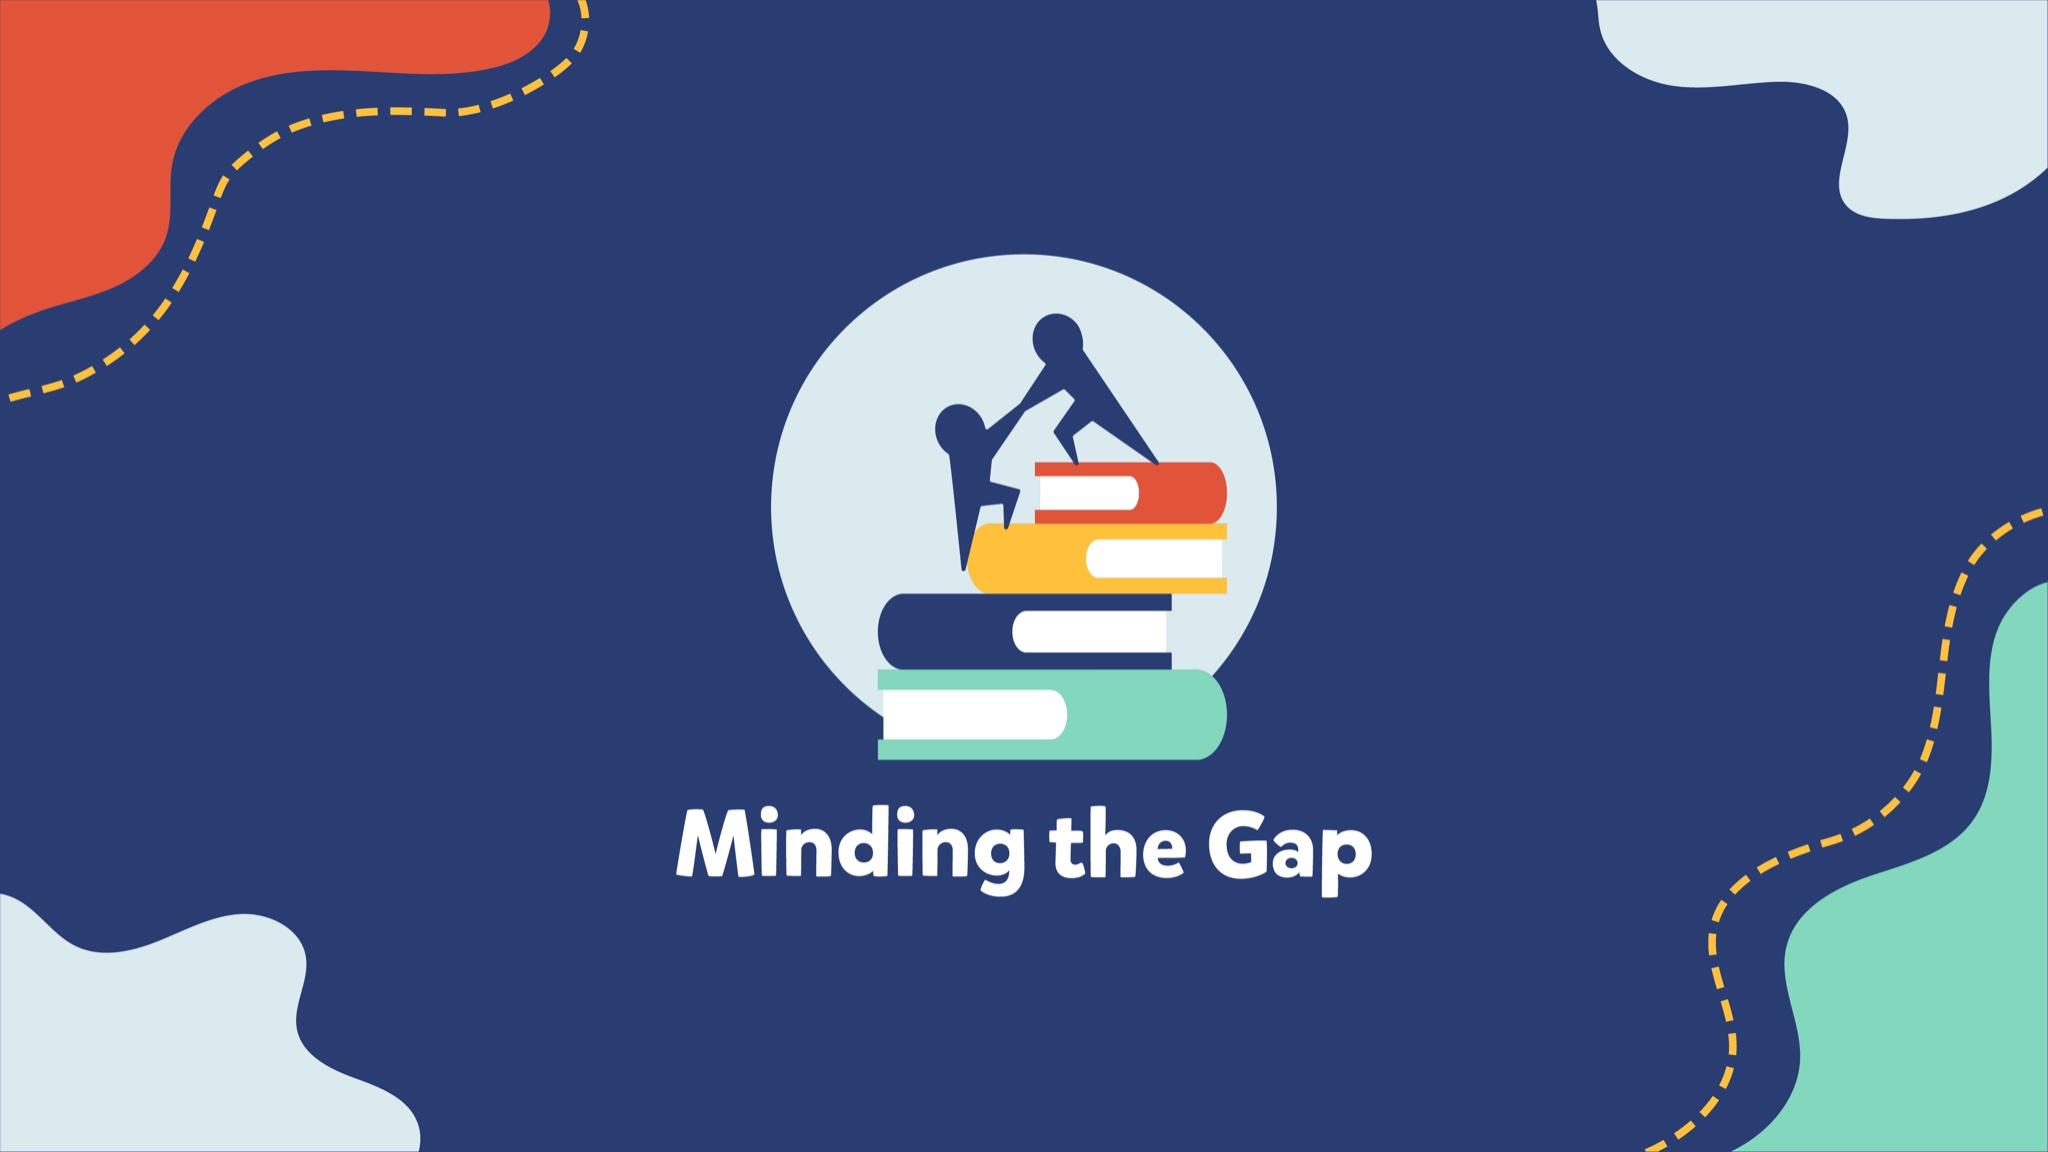 Minding the Gap Training Aug 20